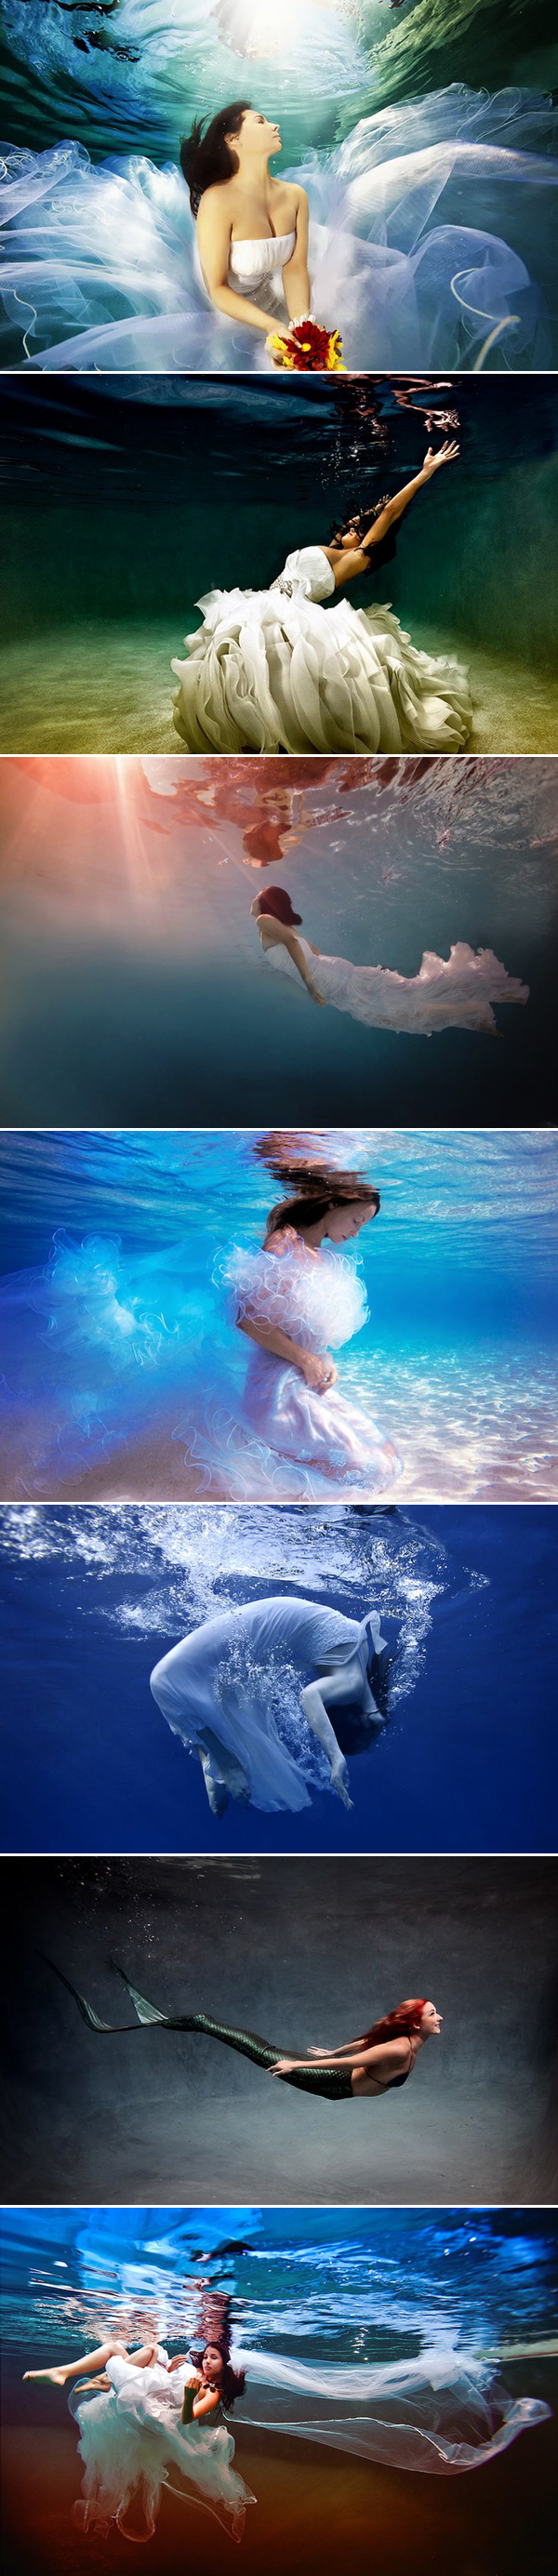 underwater04-brides